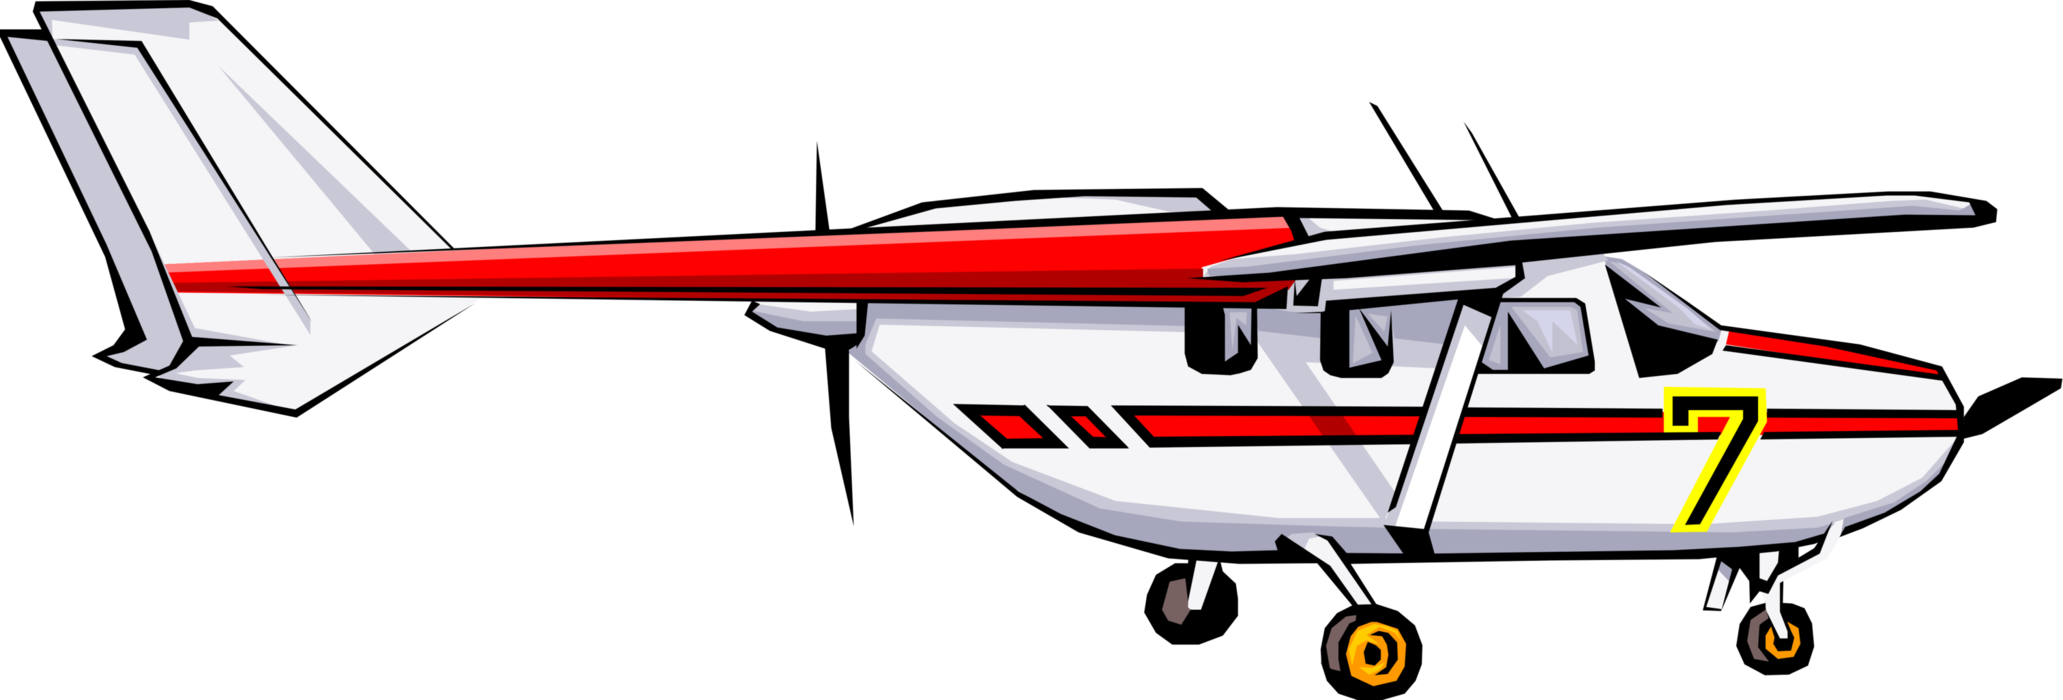 Vector Illustration of Propeller Aircraft Airplane in Flight